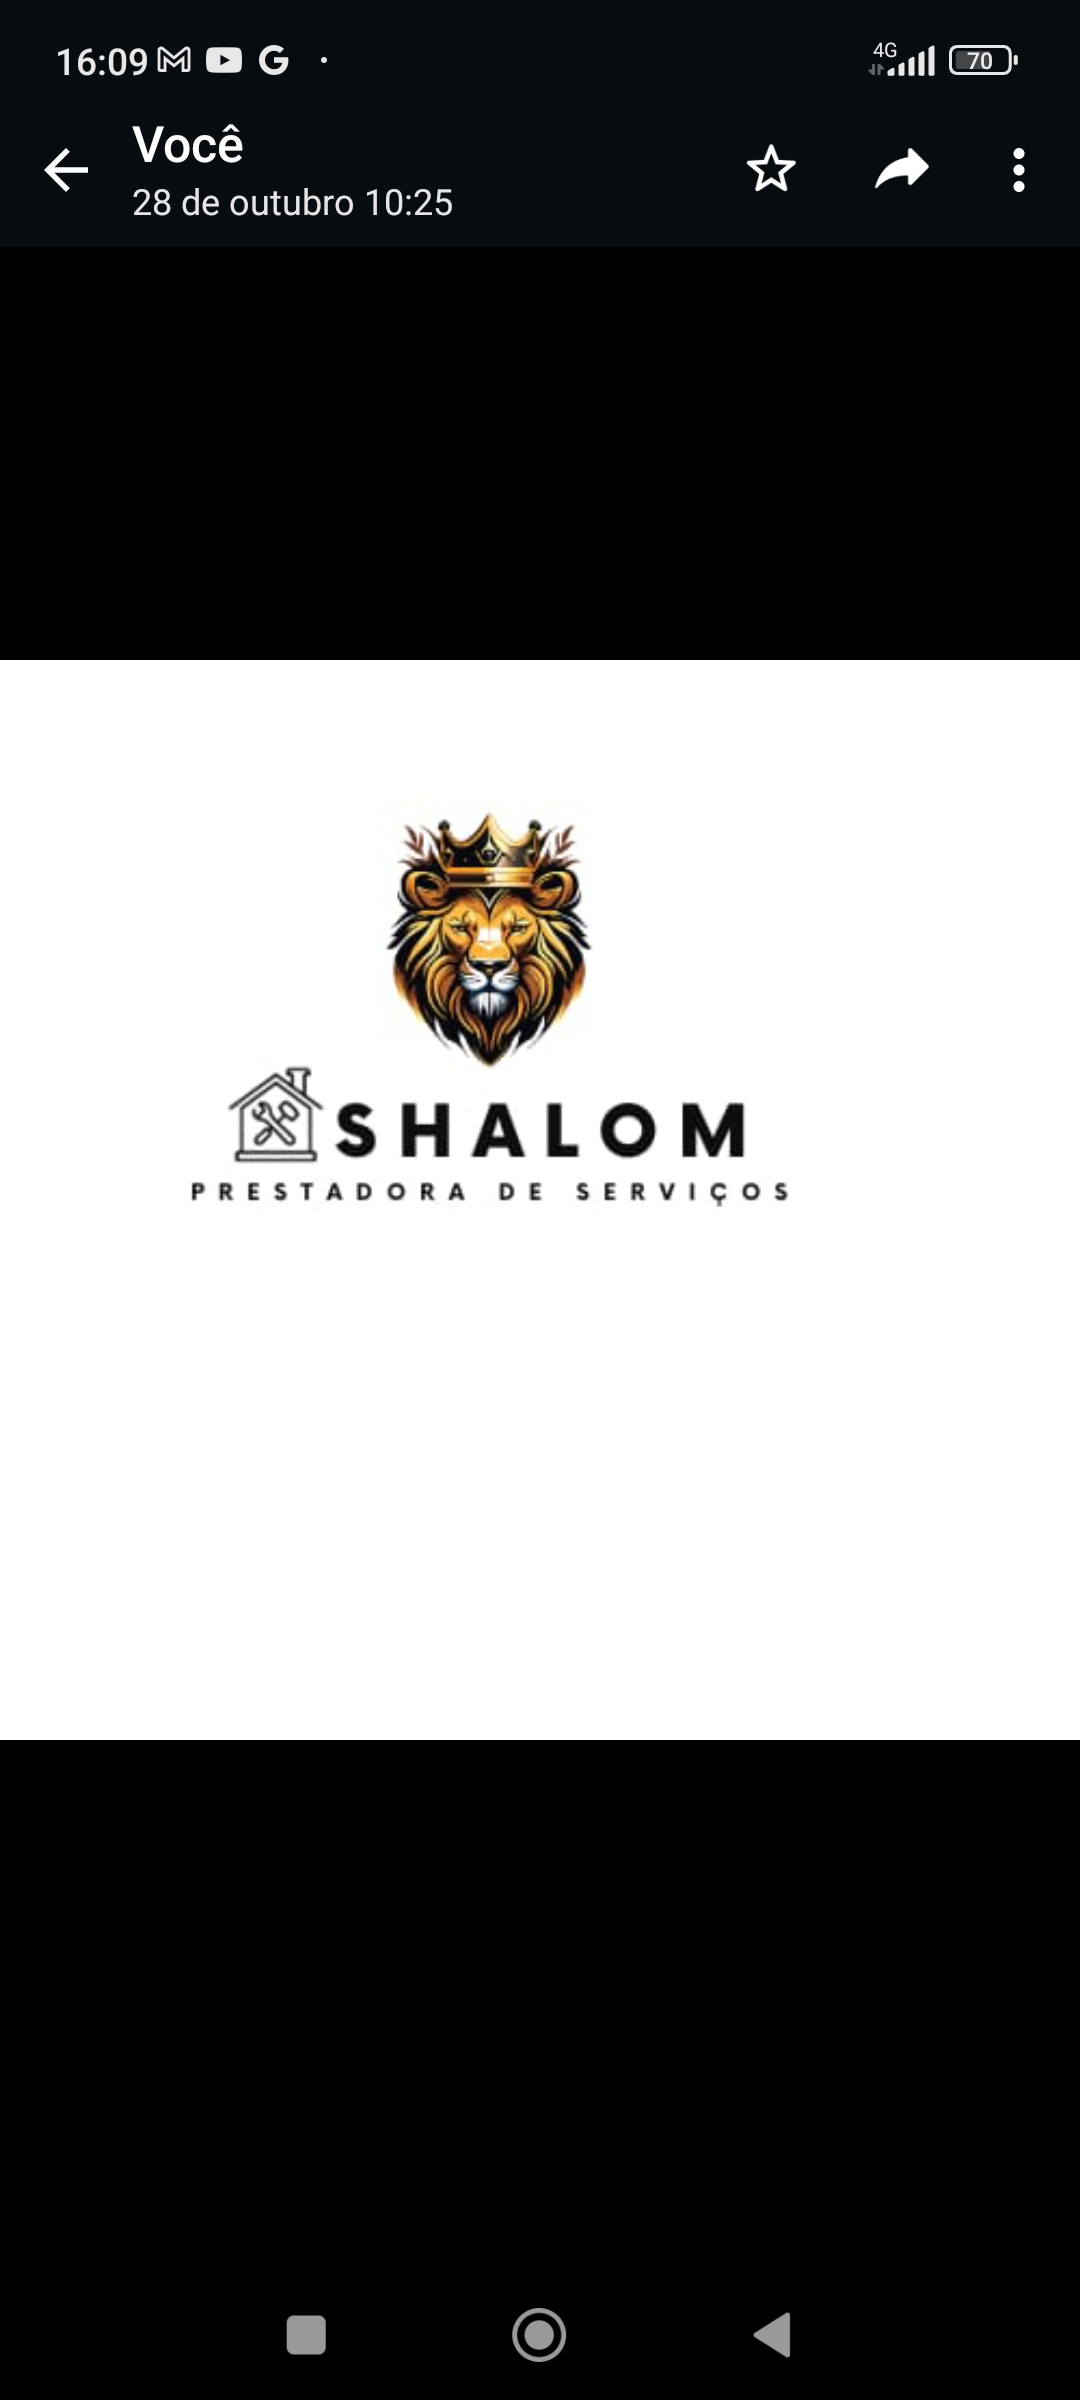 Shalom prestadora de serviços - Sintra - Instalação, Reparação ou Remoção de Revestimento de Parede